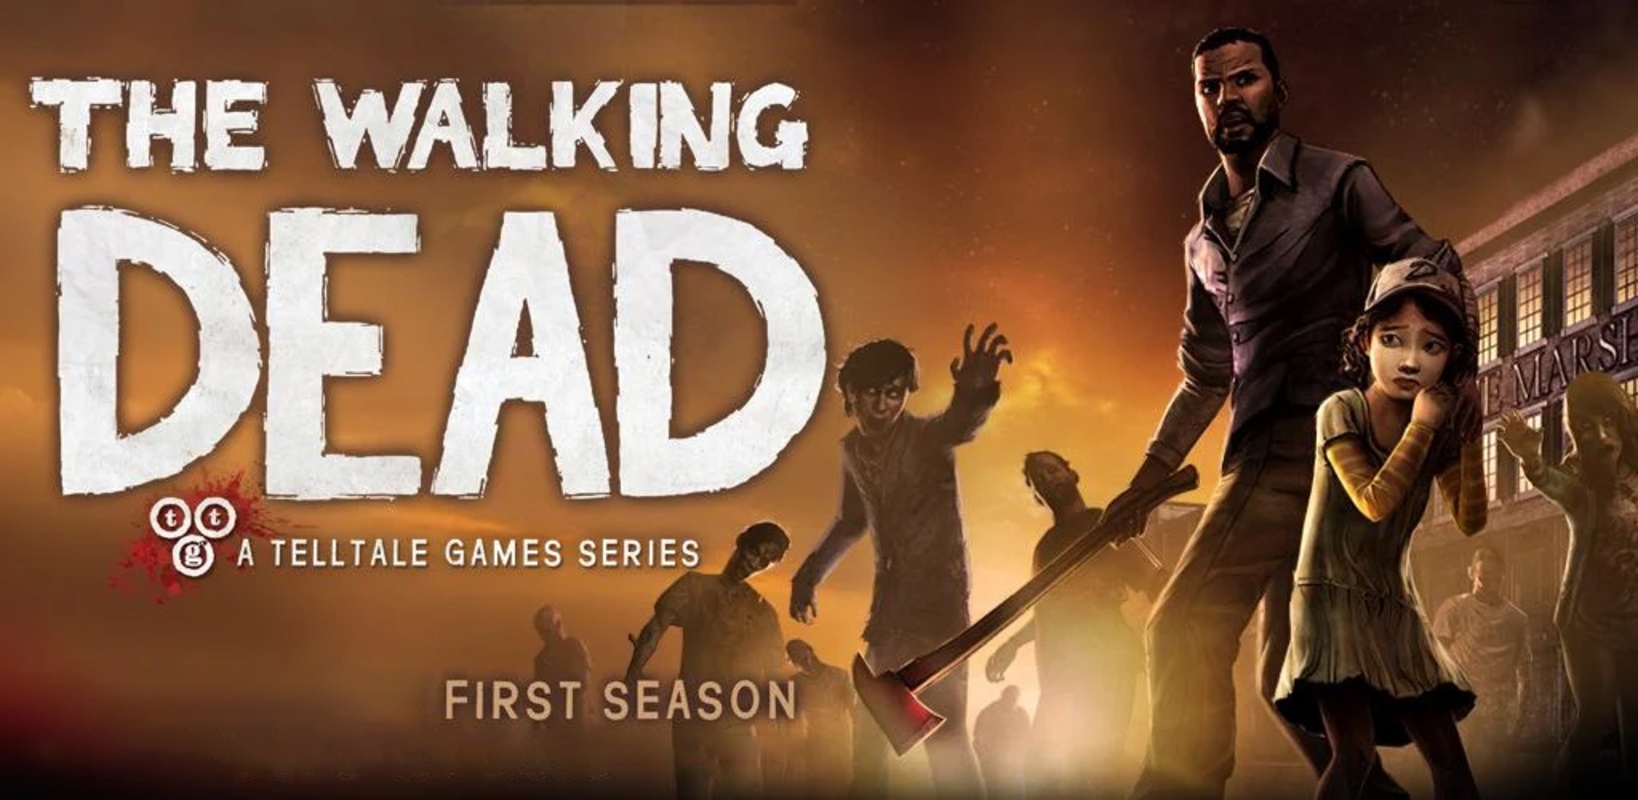 The Walking Dead: Season One 1.20 APK feature